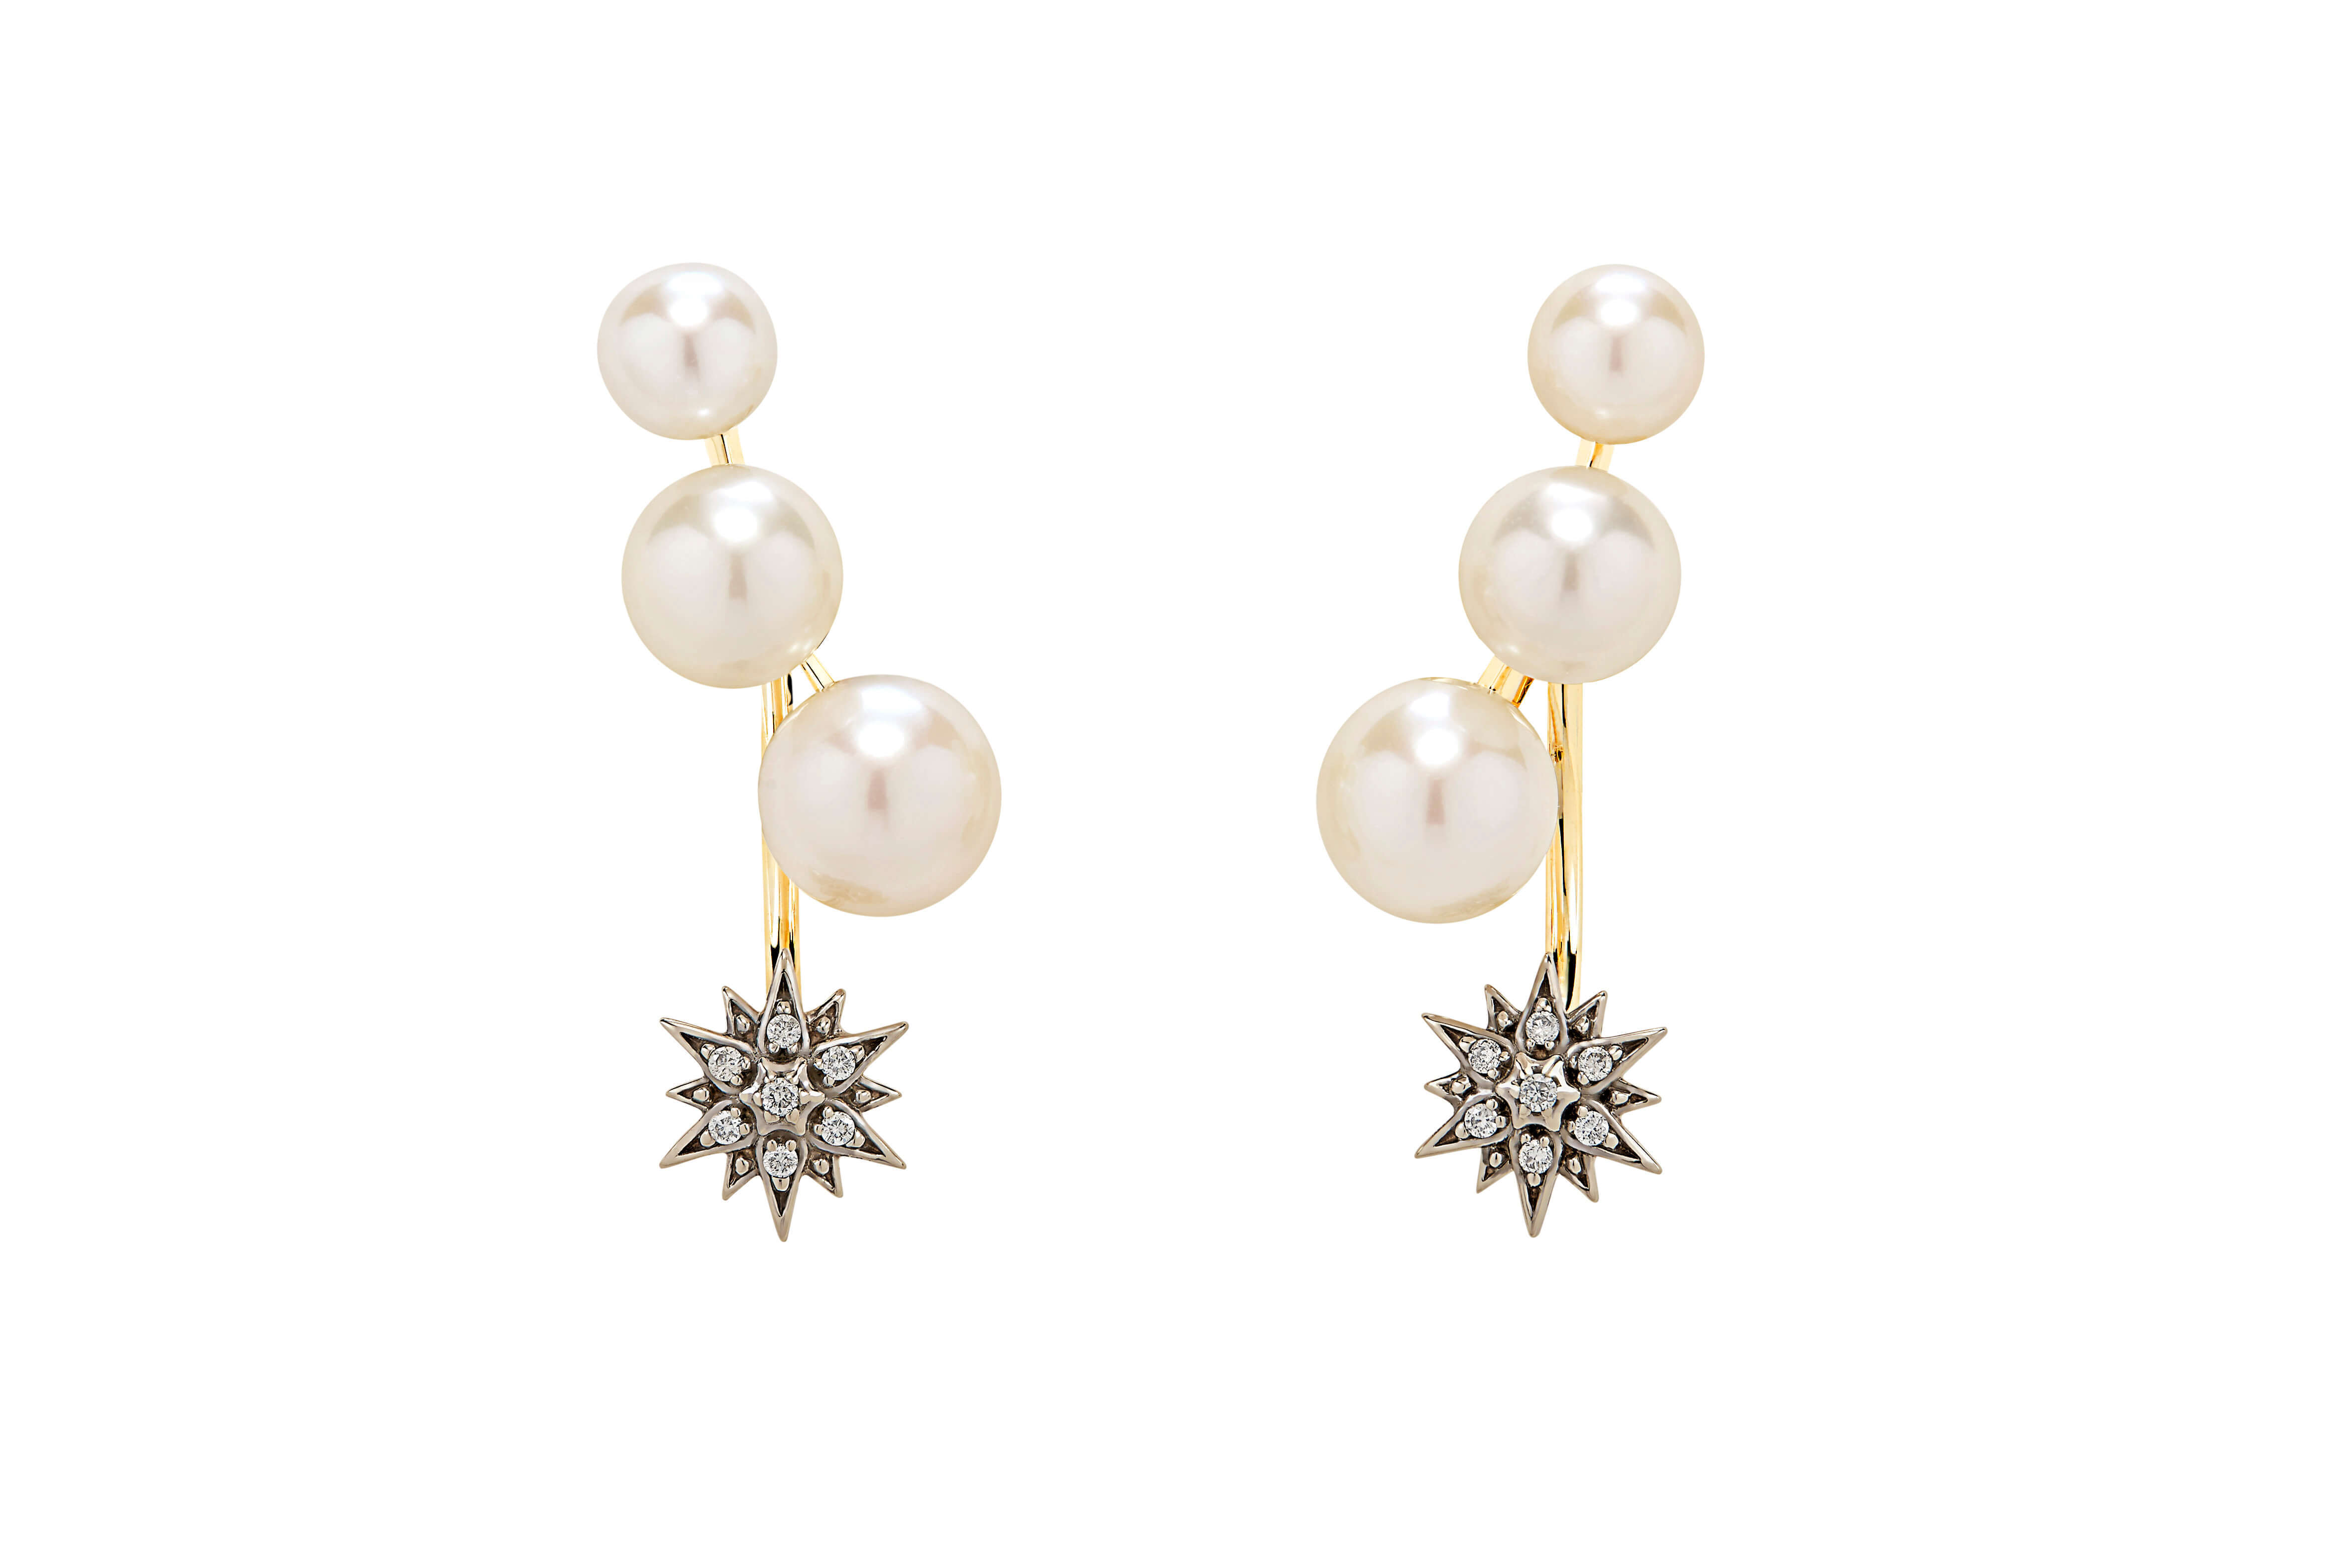 Pearls_of_Genesis_H.Stern_-_earrings_in_18K_gold,_pearls_and_diamonds_(B2P_205193)